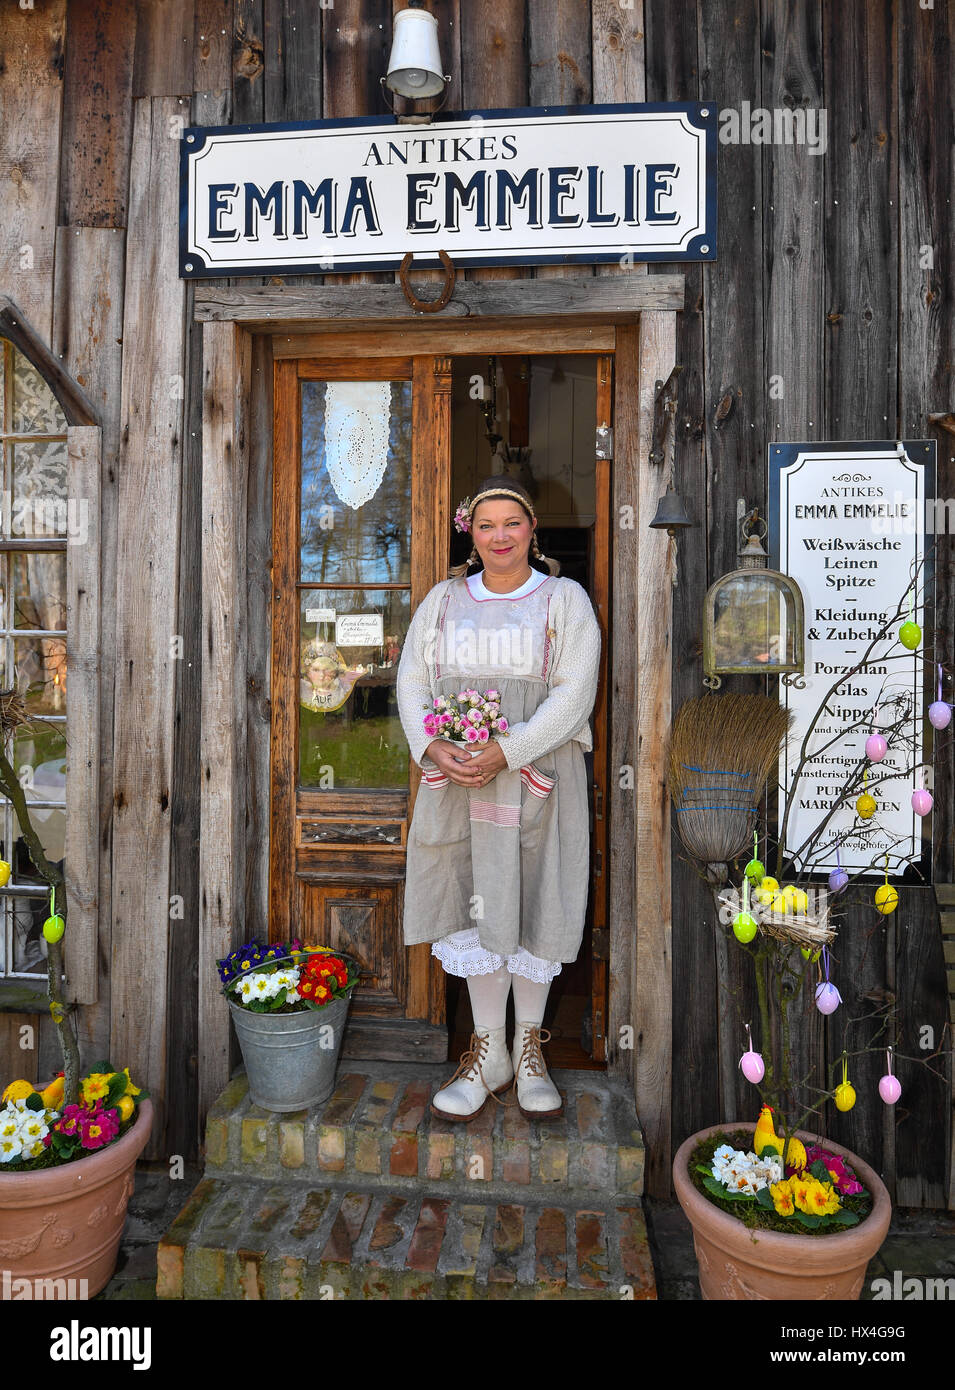 Zerpenschleuse, Alemania. 24 Mar, 2017. Ines Schweighoefer está a la puerta  de su antiguo granero 'Emma Emmelie Antiques' de antigüedades rústicas,  telas, textiles y arte en Zerpenschleuse, Alemania, el 24 de marzo